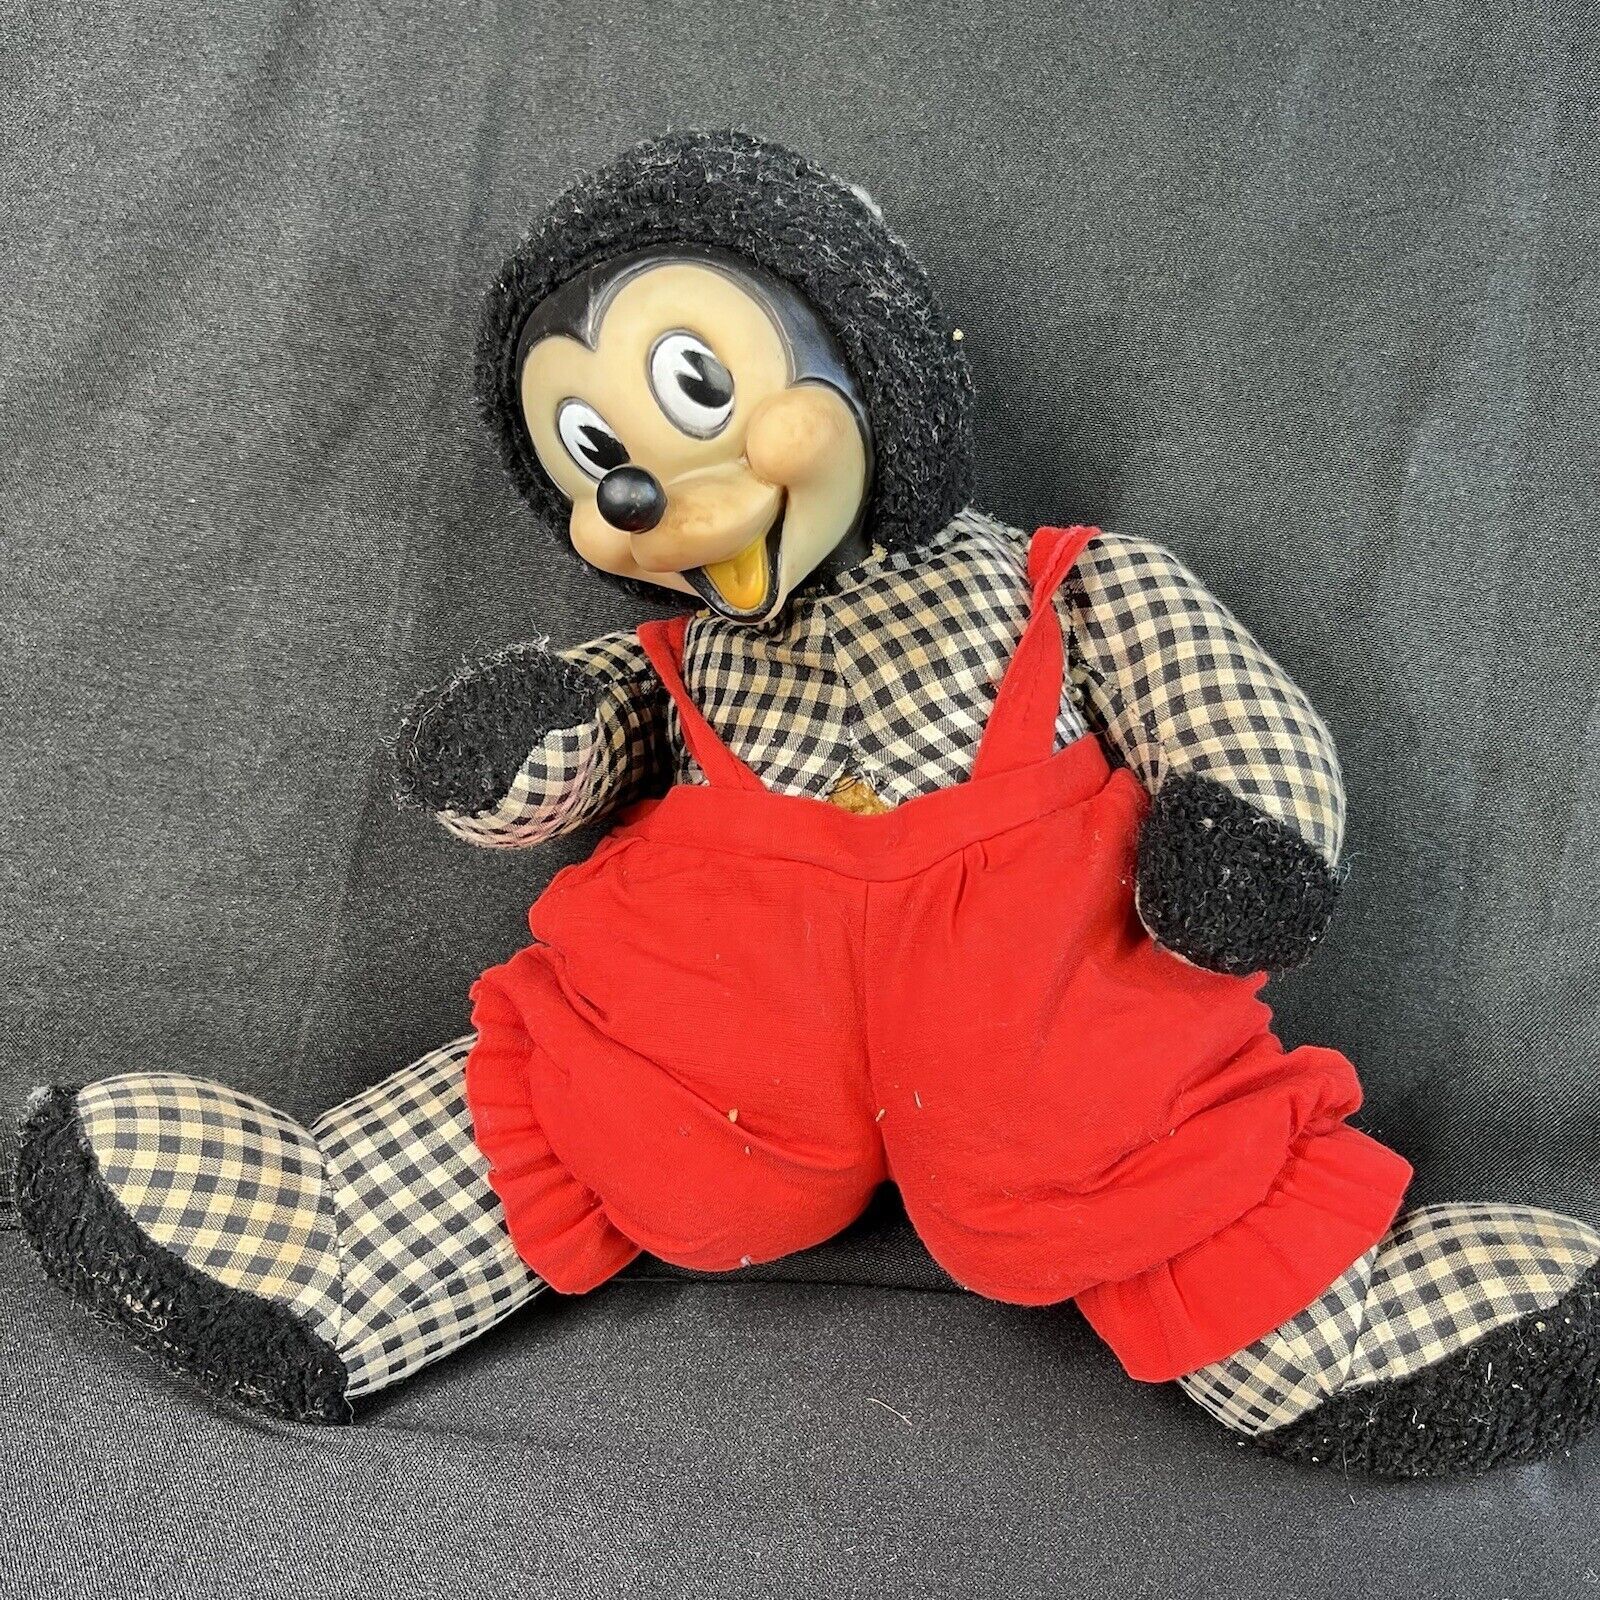 antique vintage walt disney Minnie Mouse plush doll 